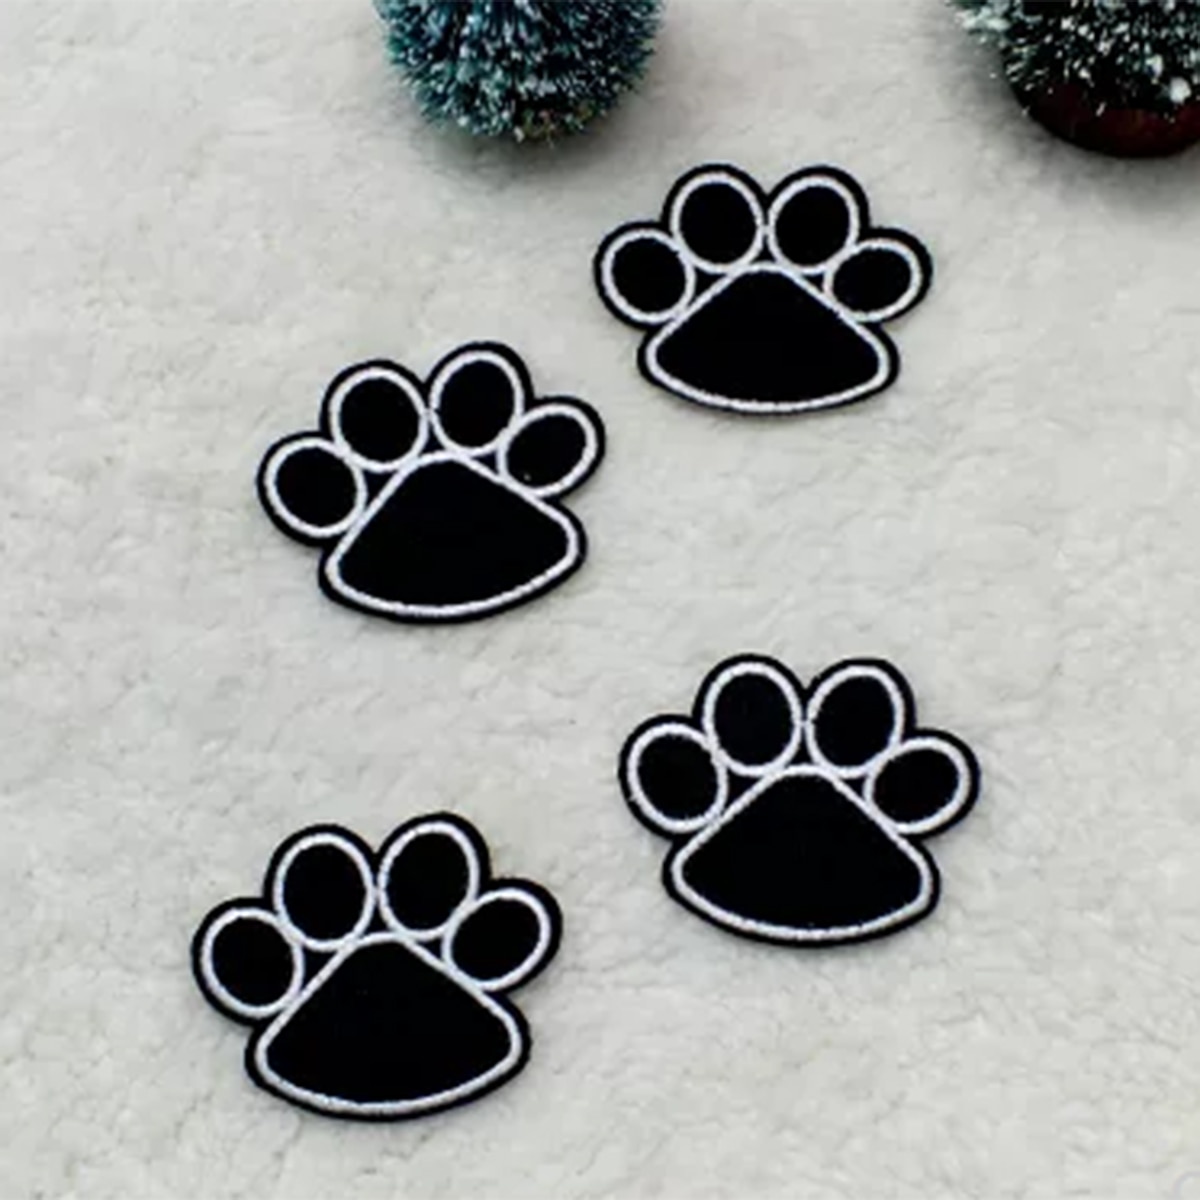 Zwarte Hond Poot Vorm Borduren Strijken Patches Sticker Ongeveer 5.1X4.2Cm Voor Diy Kleding Decoratie Patch Repair-1pc